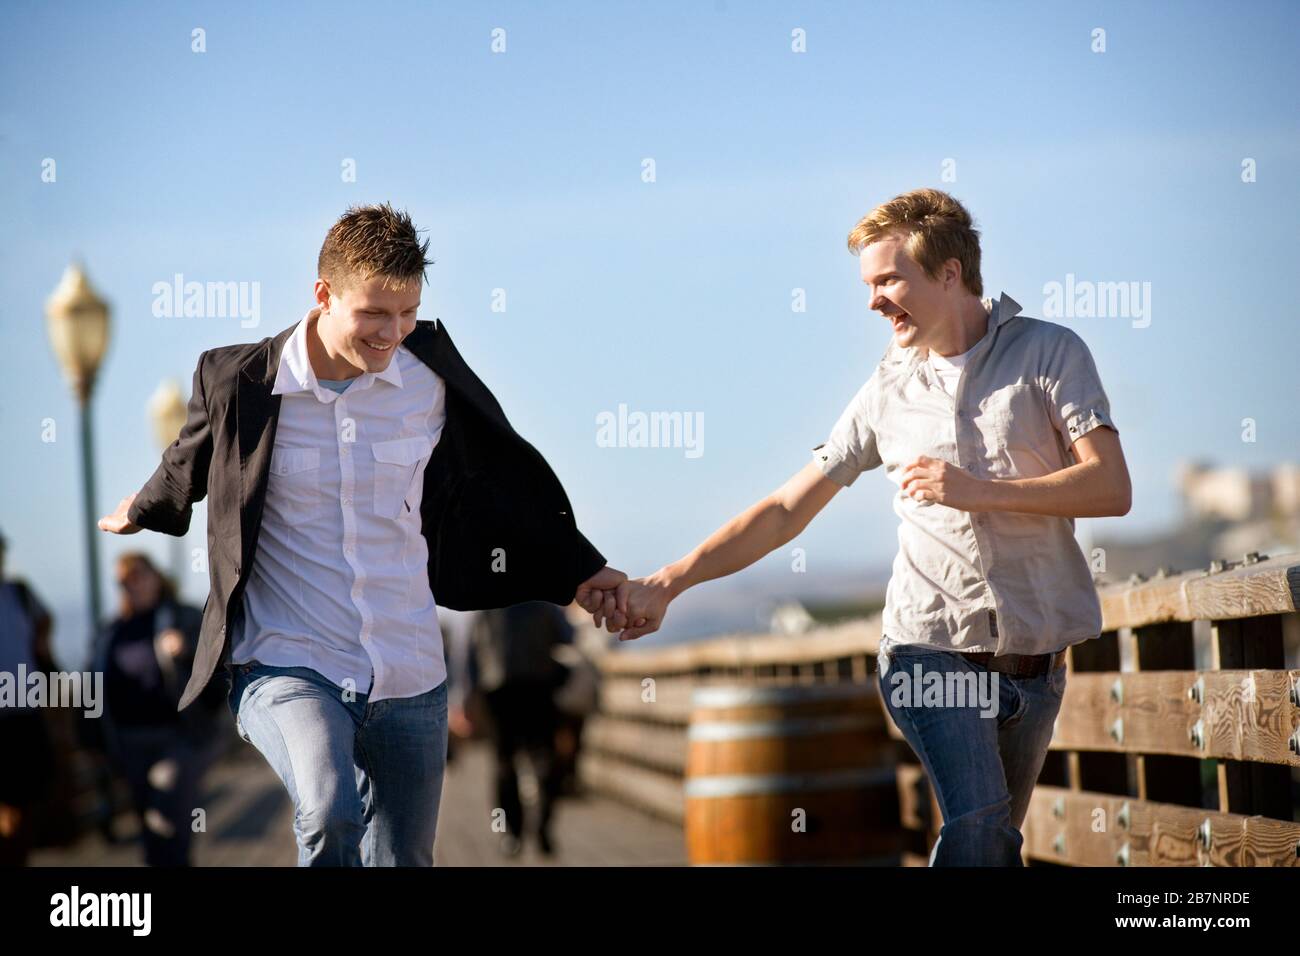 Zwei lächelnde junge homosexuelle Männer laufen zusammen, während sie die Hände halten. Stockfoto